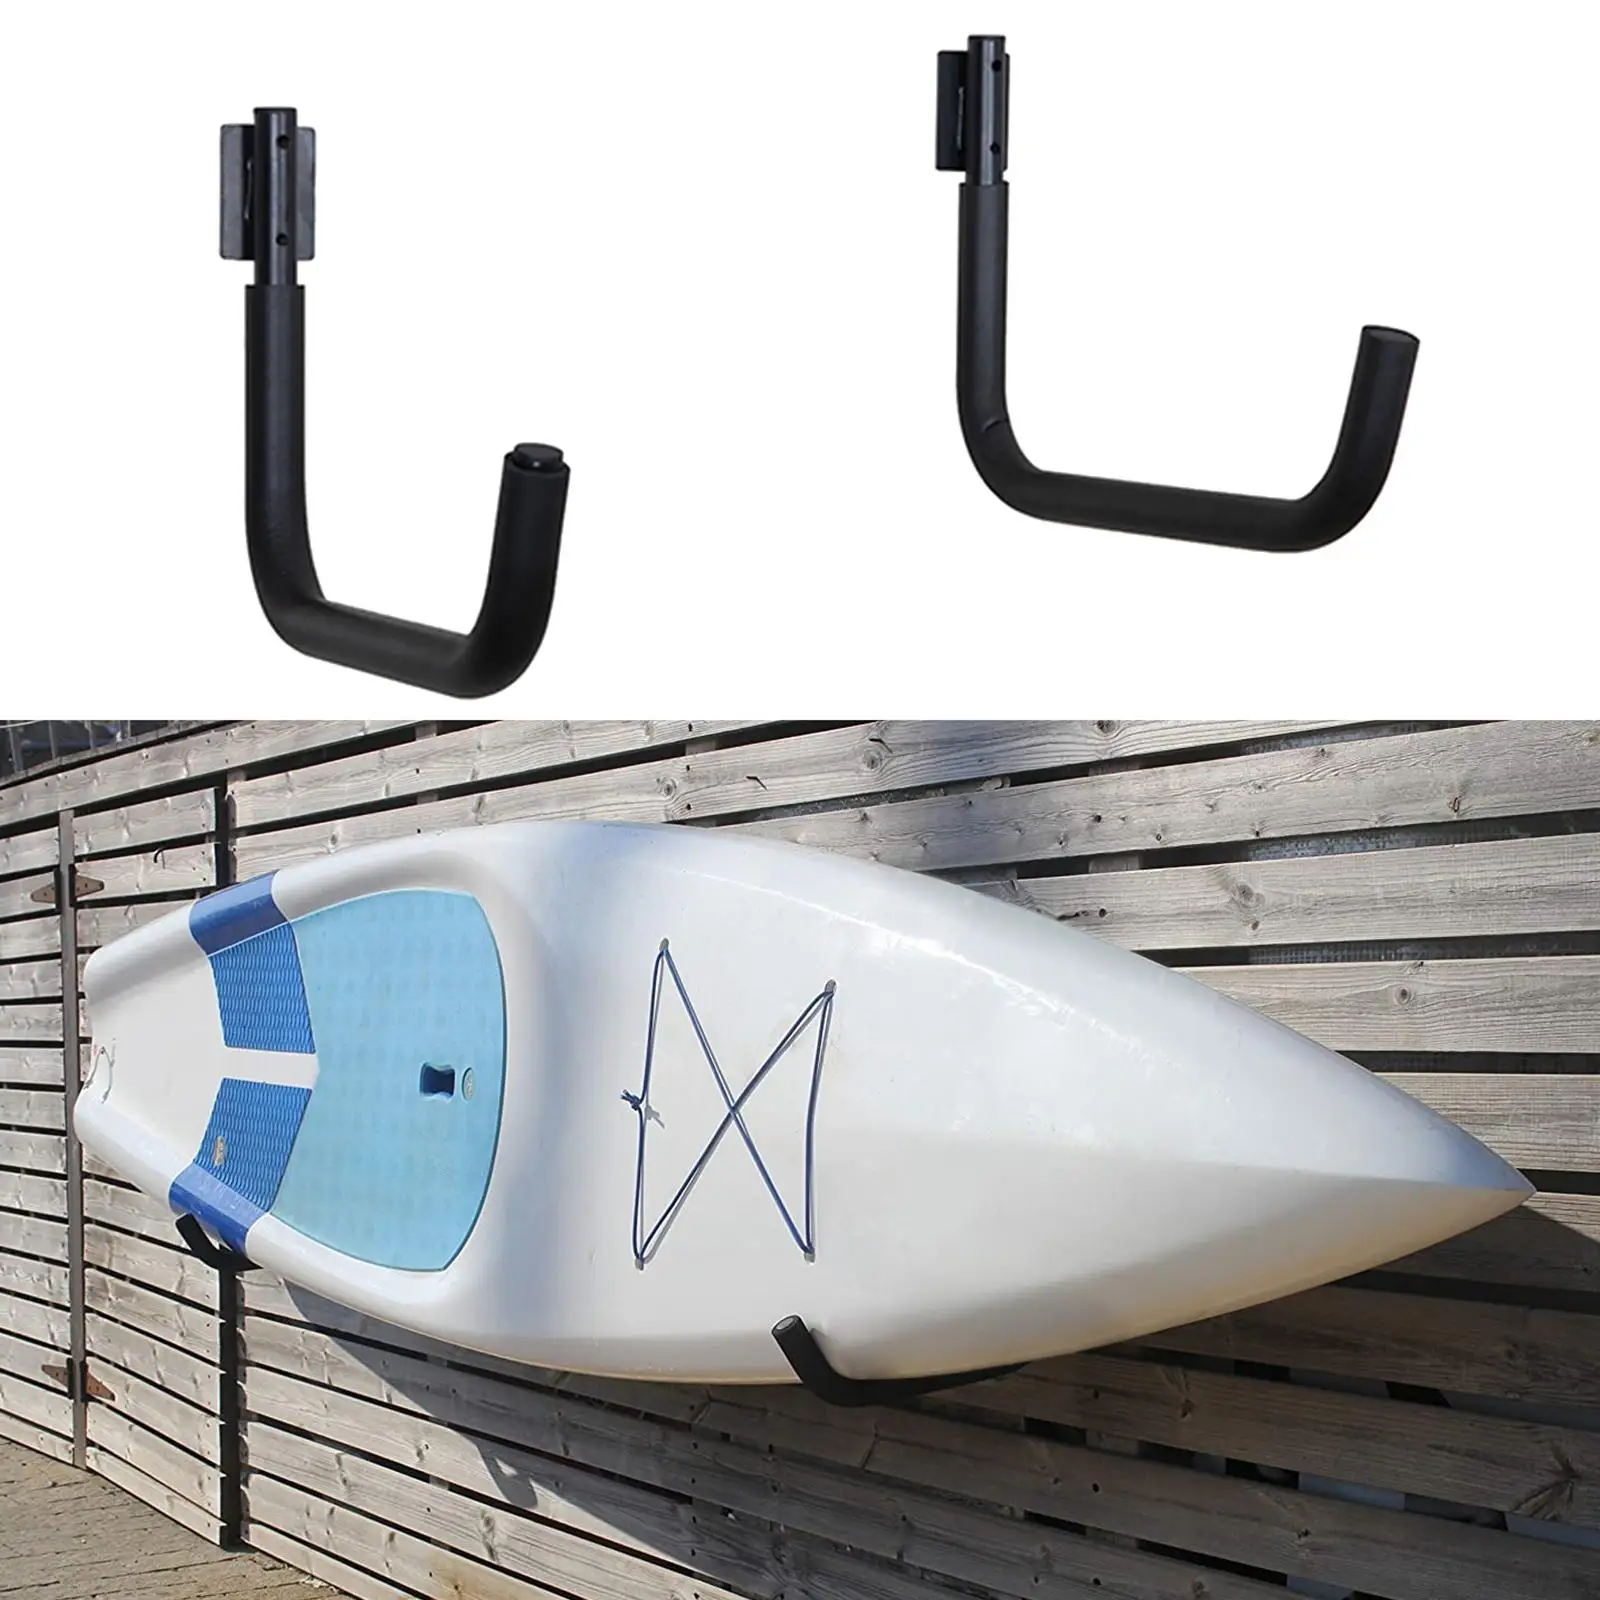 2 Pieces Kayak Hanger 100lb Capacity Indoor Outdoor Snowboard Holder Hook